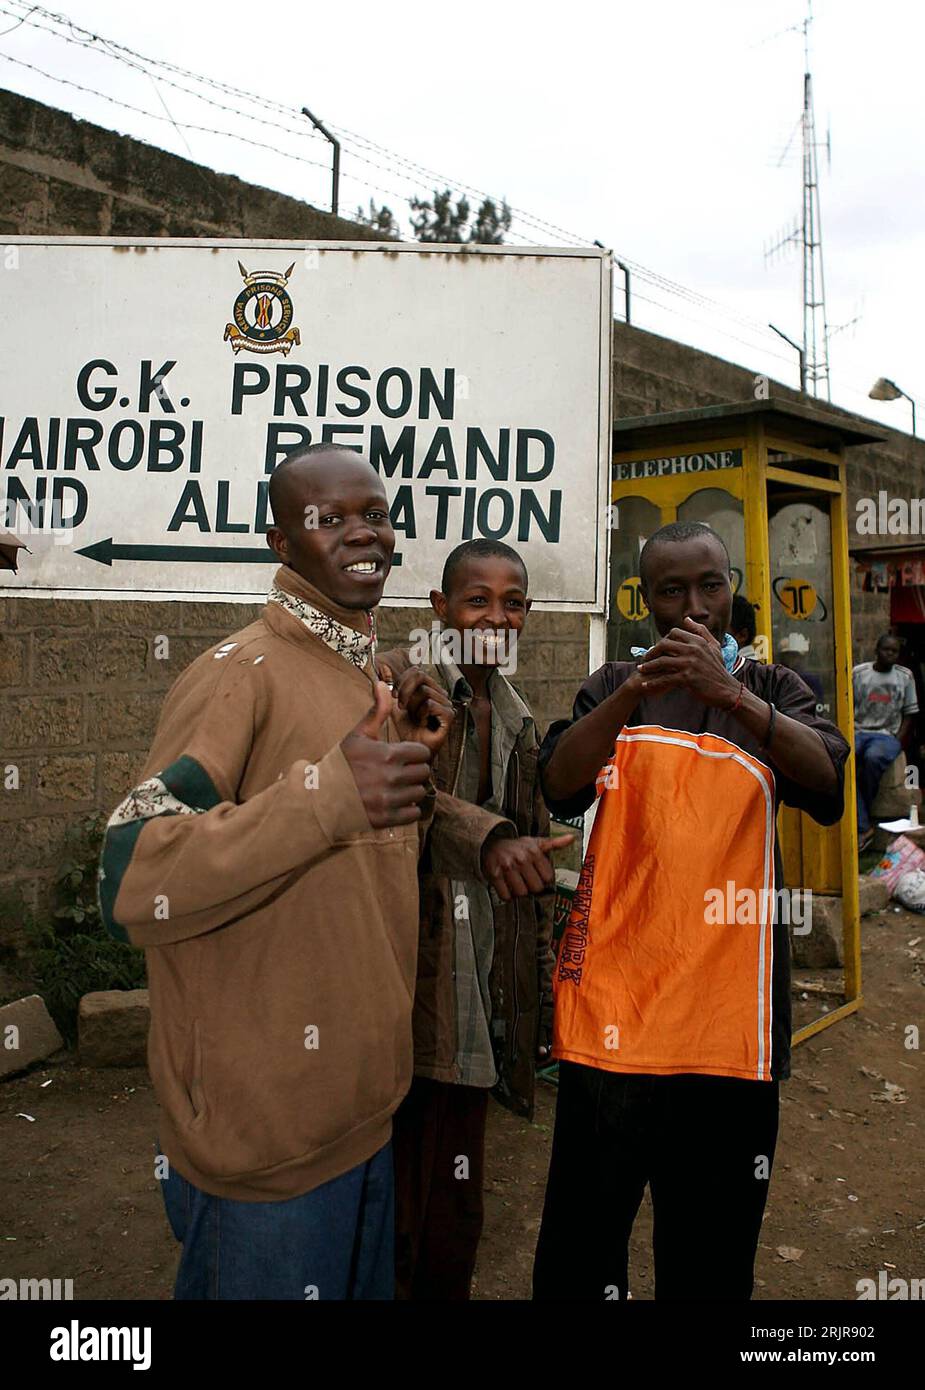 Bildnummer: 51336032  Datum: 14.07.2006  Copyright: imago/Xinhua Häftlinge werden aus einem Gefängnis in Nairobi entlassen - PUBLICATIONxNOTxINxCHN, Personen , optimistisch , Freude; 2006, Nairobi, Gefängnis, Gefängnisse, Prison, Schriftzug, Häftling, Häftlinge, Insasse, Insassen, Gefangene, Gefangener, Kenianer, thumbs up, Daumen , Gestik; , hoch, Kbdig, Gruppenbild, Kenia,  , Strafvollzug, Staat / Freilassung, Entlassung, Begnadigung, Mann, Männer Stock Photo